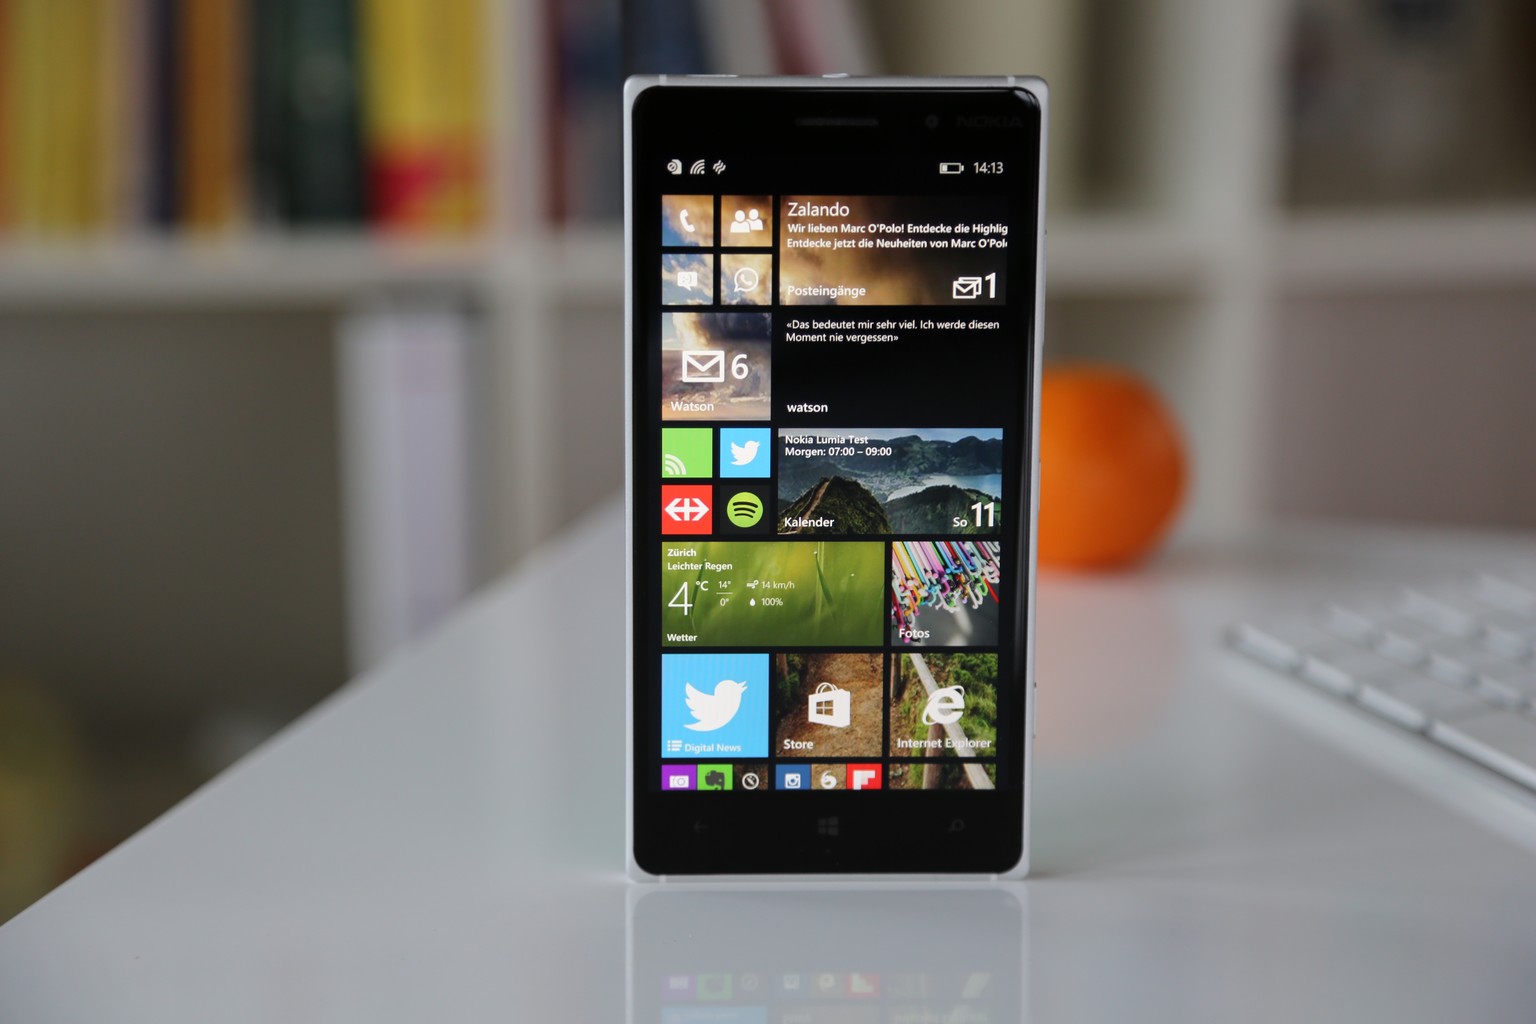 Das Lumia 830 (Bild) sieht zwar fast gleich aus wie das teurere&nbsp;Lumia 930, kann aber nicht ganz mit dessen Geschwindigkeit mithalten.&nbsp;